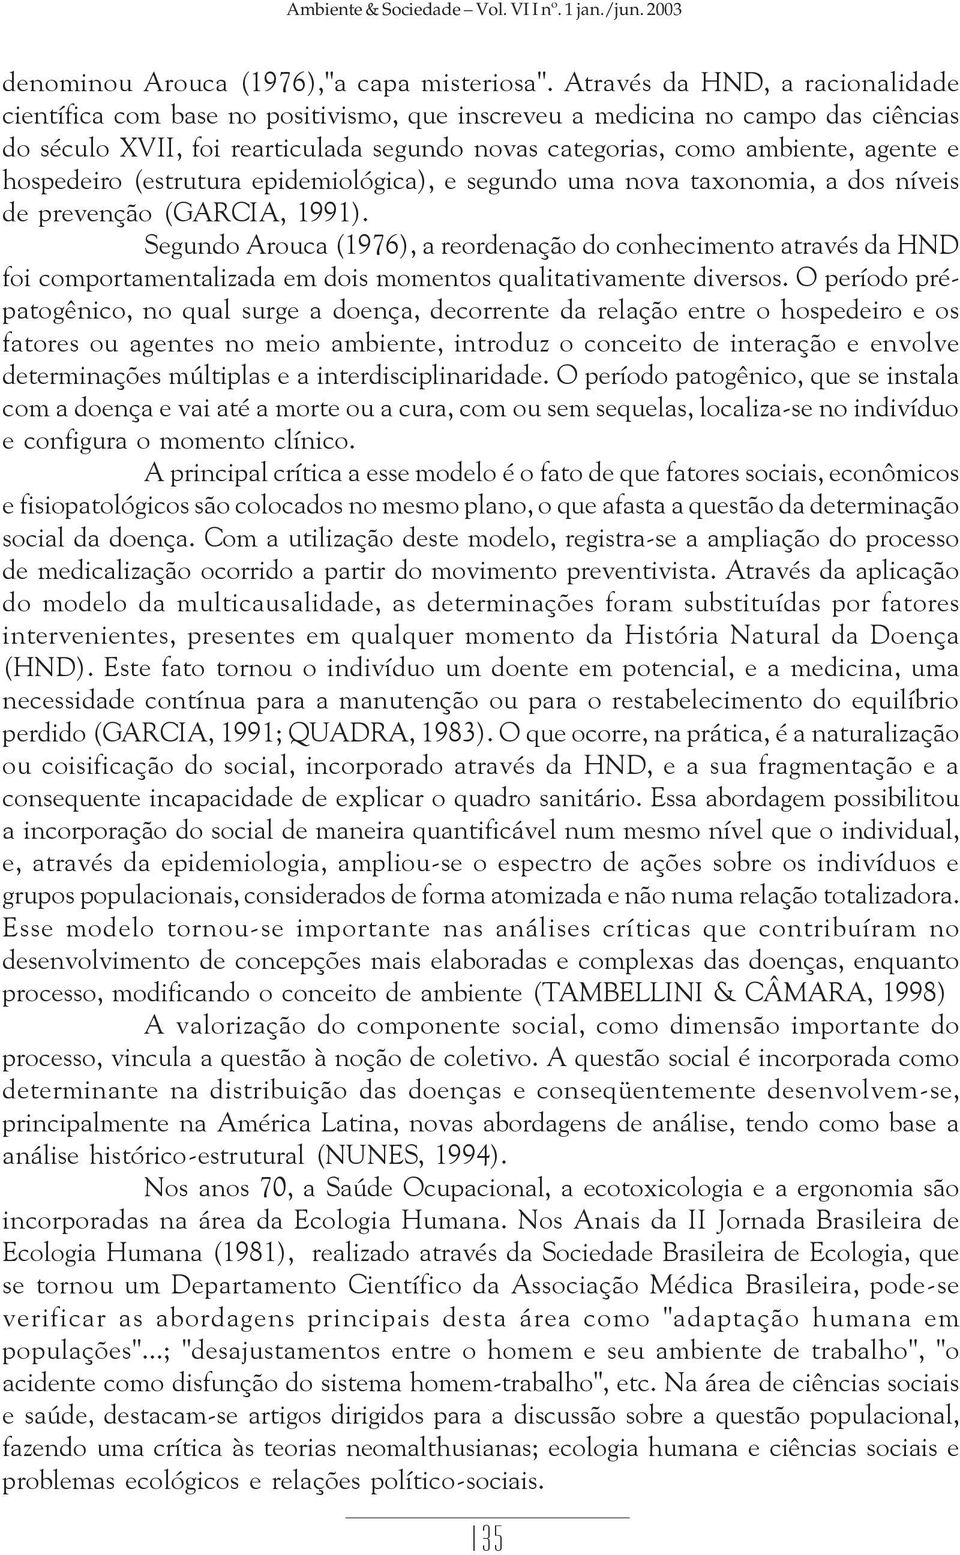 hospedeiro (estrutura epidemiológica), e segundo uma nova taxonomia, a dos níveis de prevenção (GARCIA, 1991).